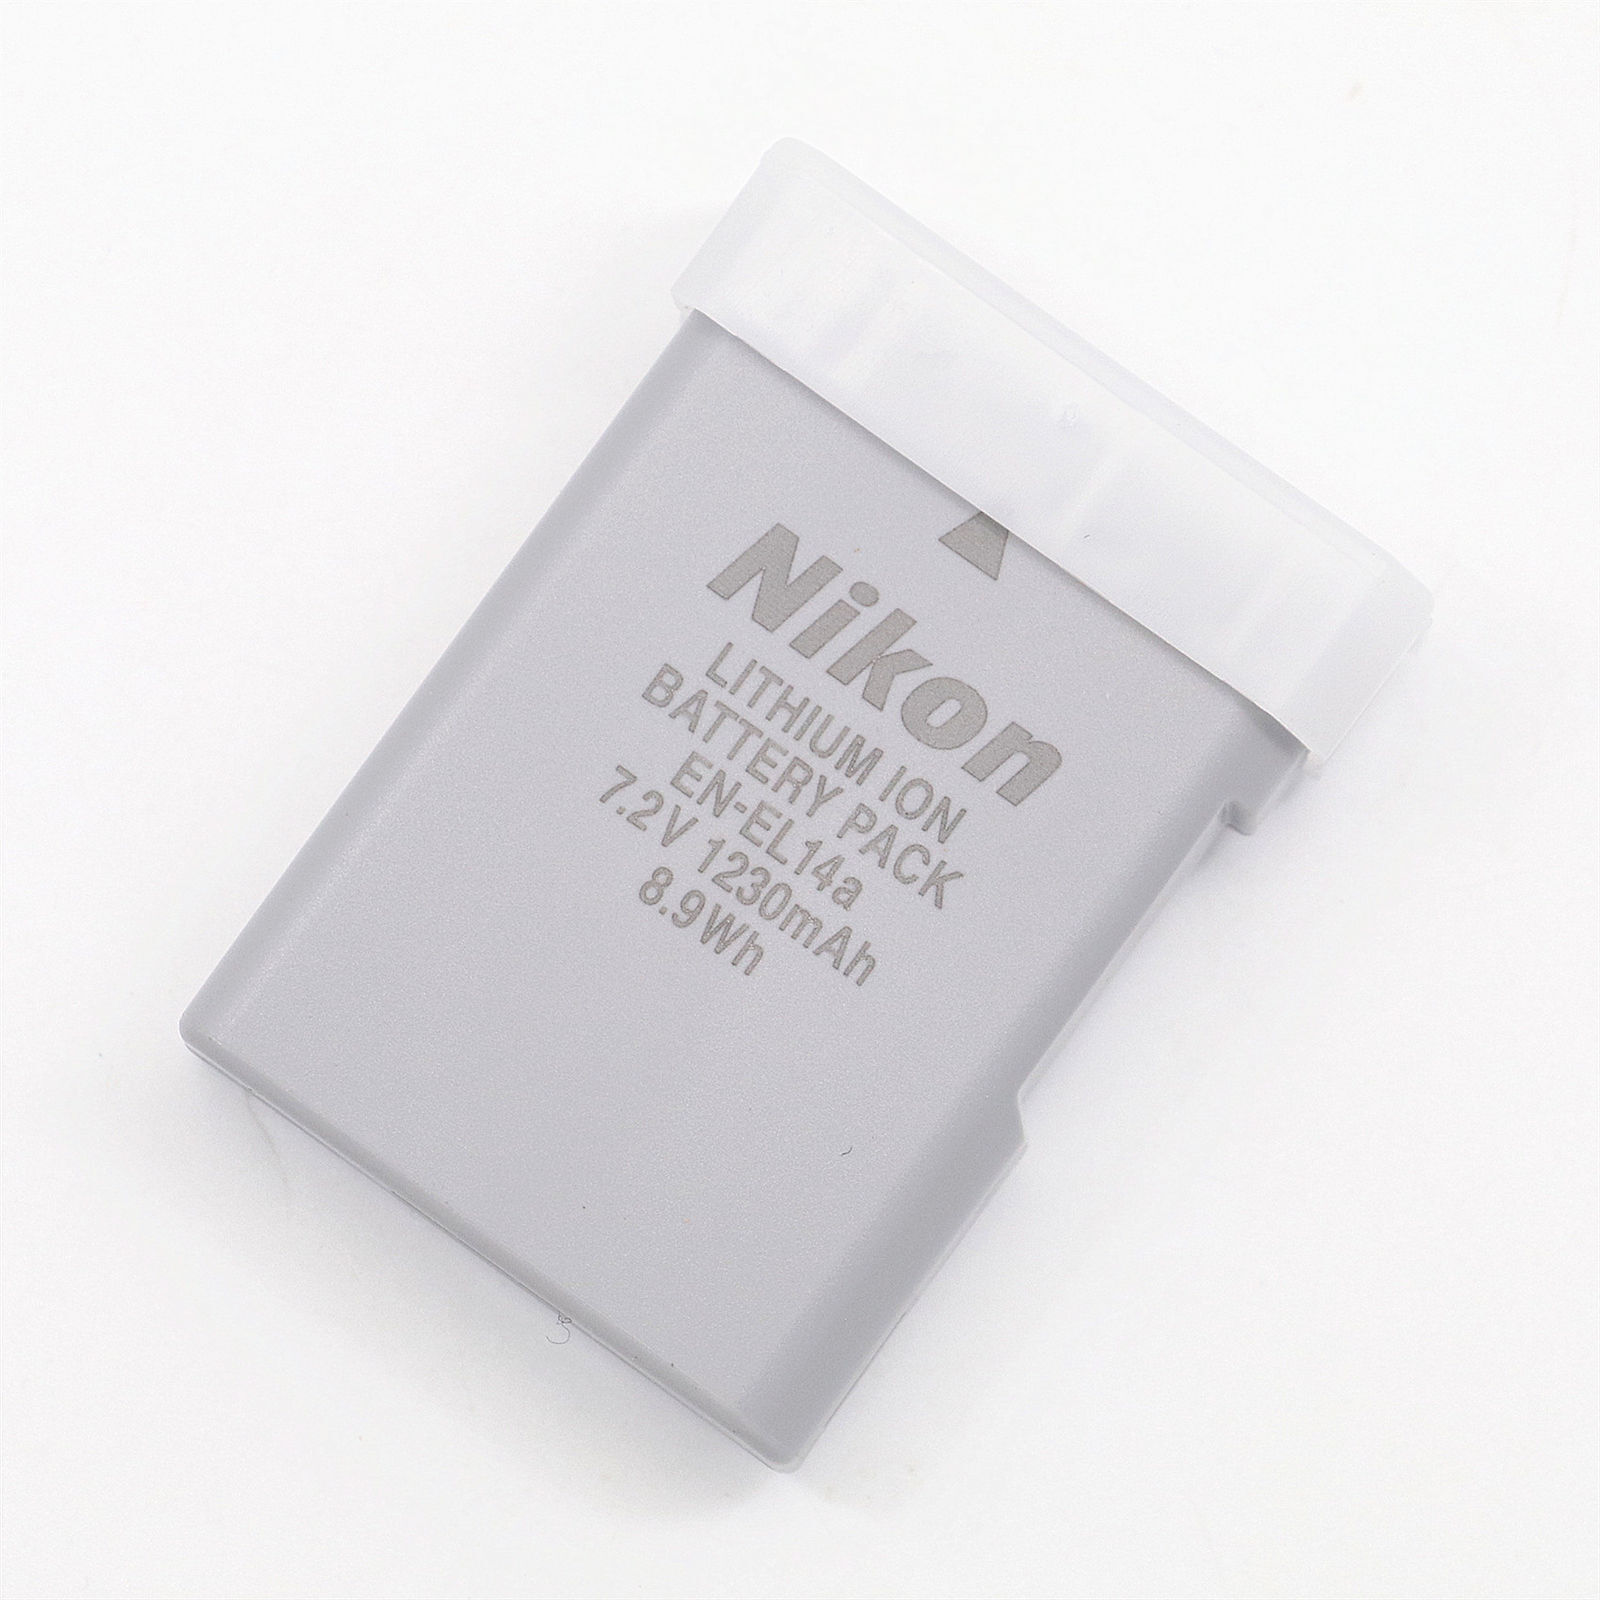 NEW Genuine Nikon EN-EL14a Battery For D5300 D5200 D5100 D3300 P7800 P7700 MH-24